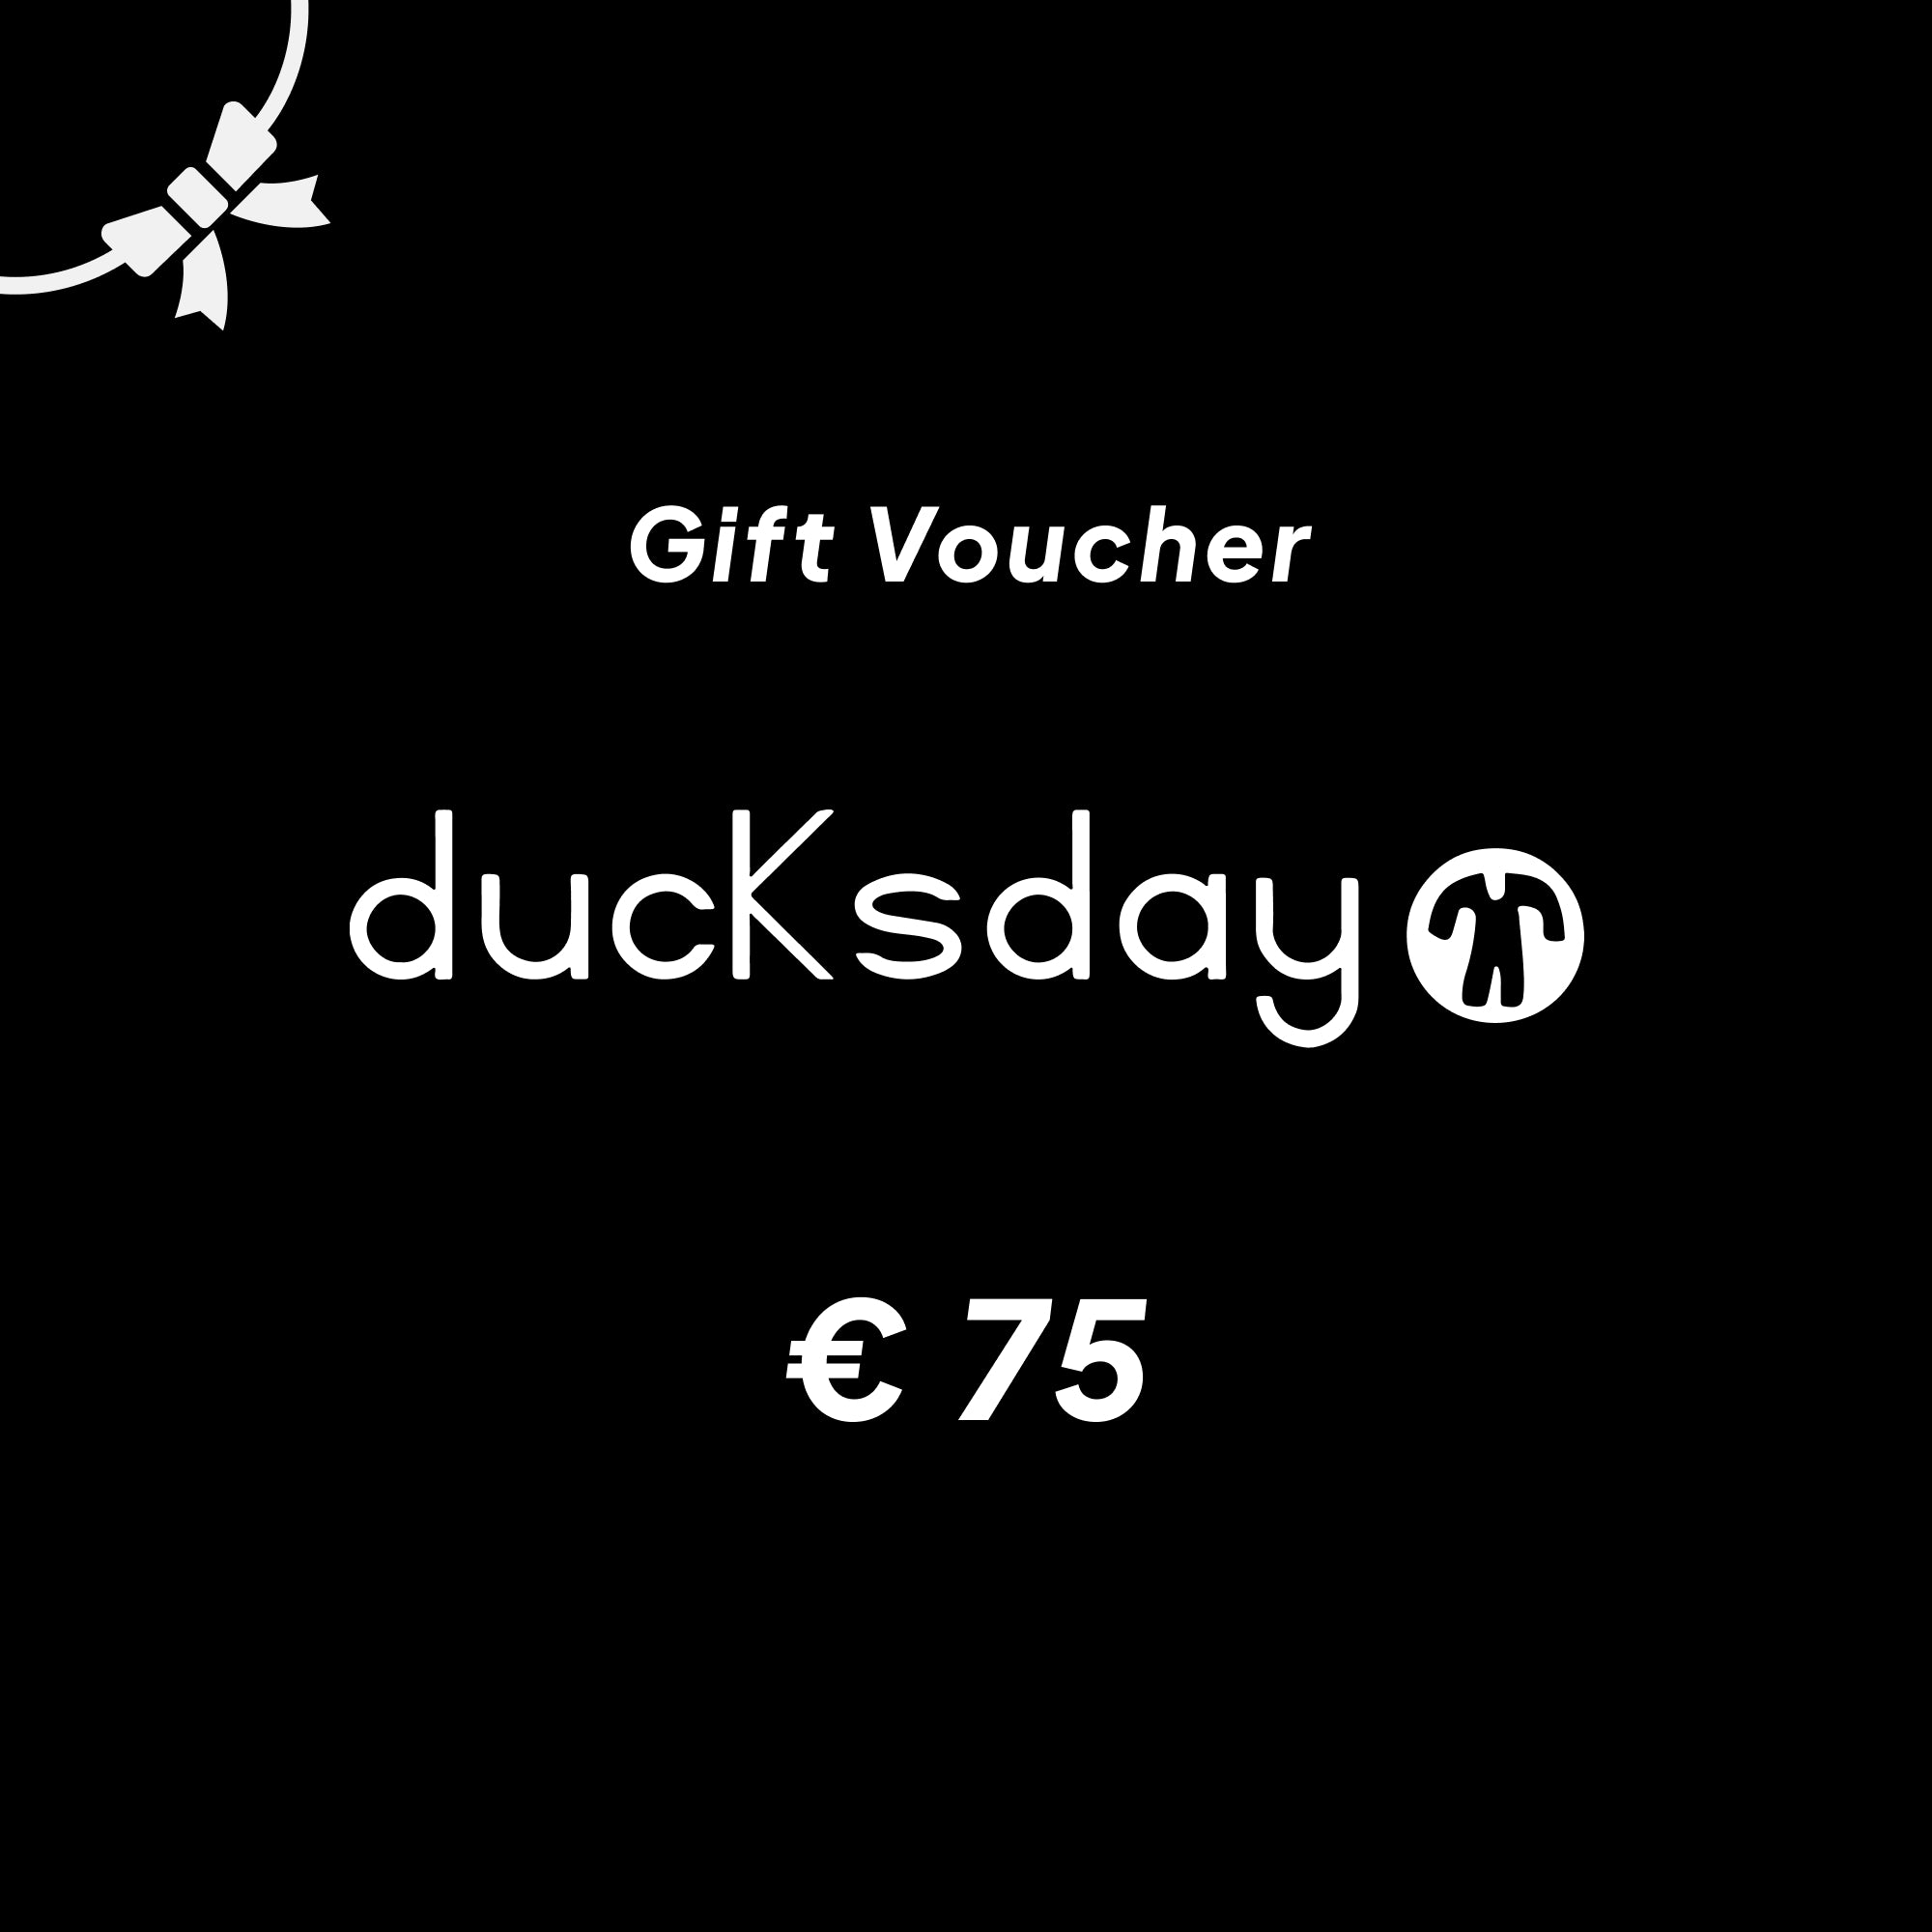 Ducksday Gift Voucher